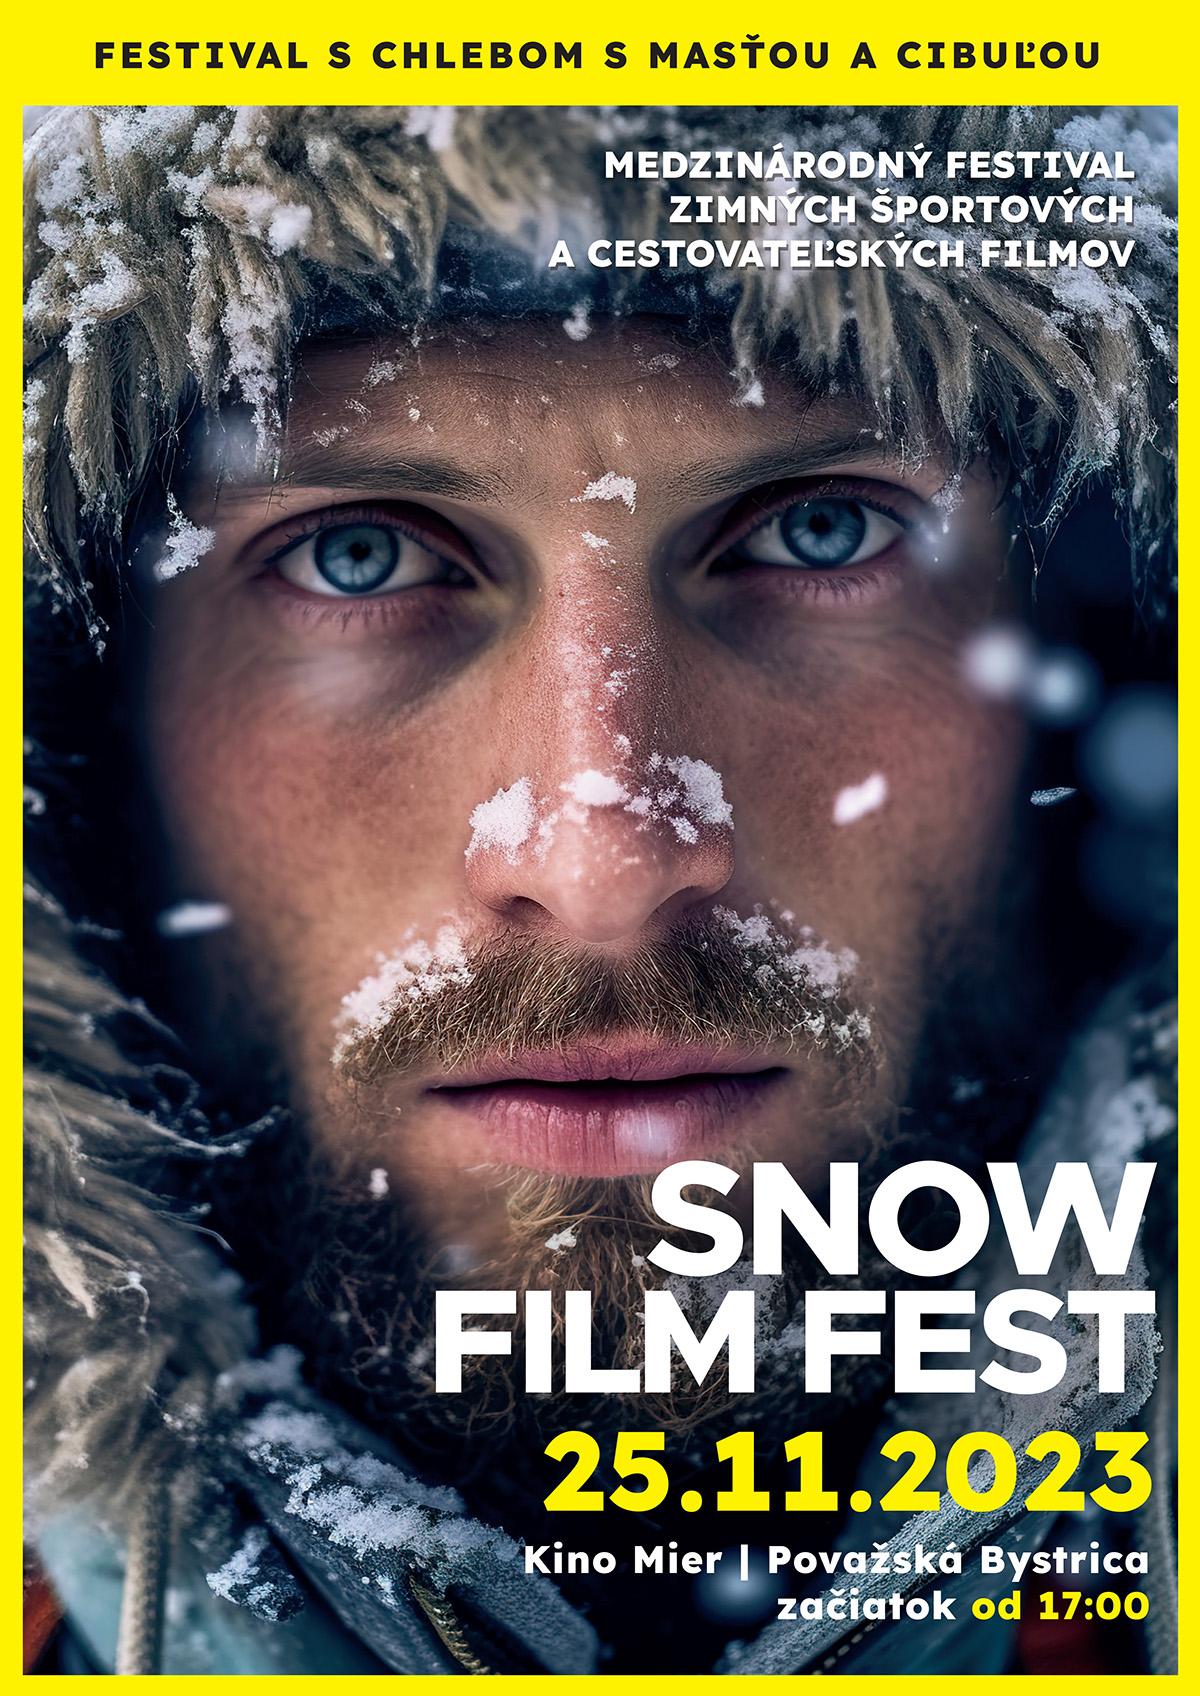 SNOW FILM FEST 2023